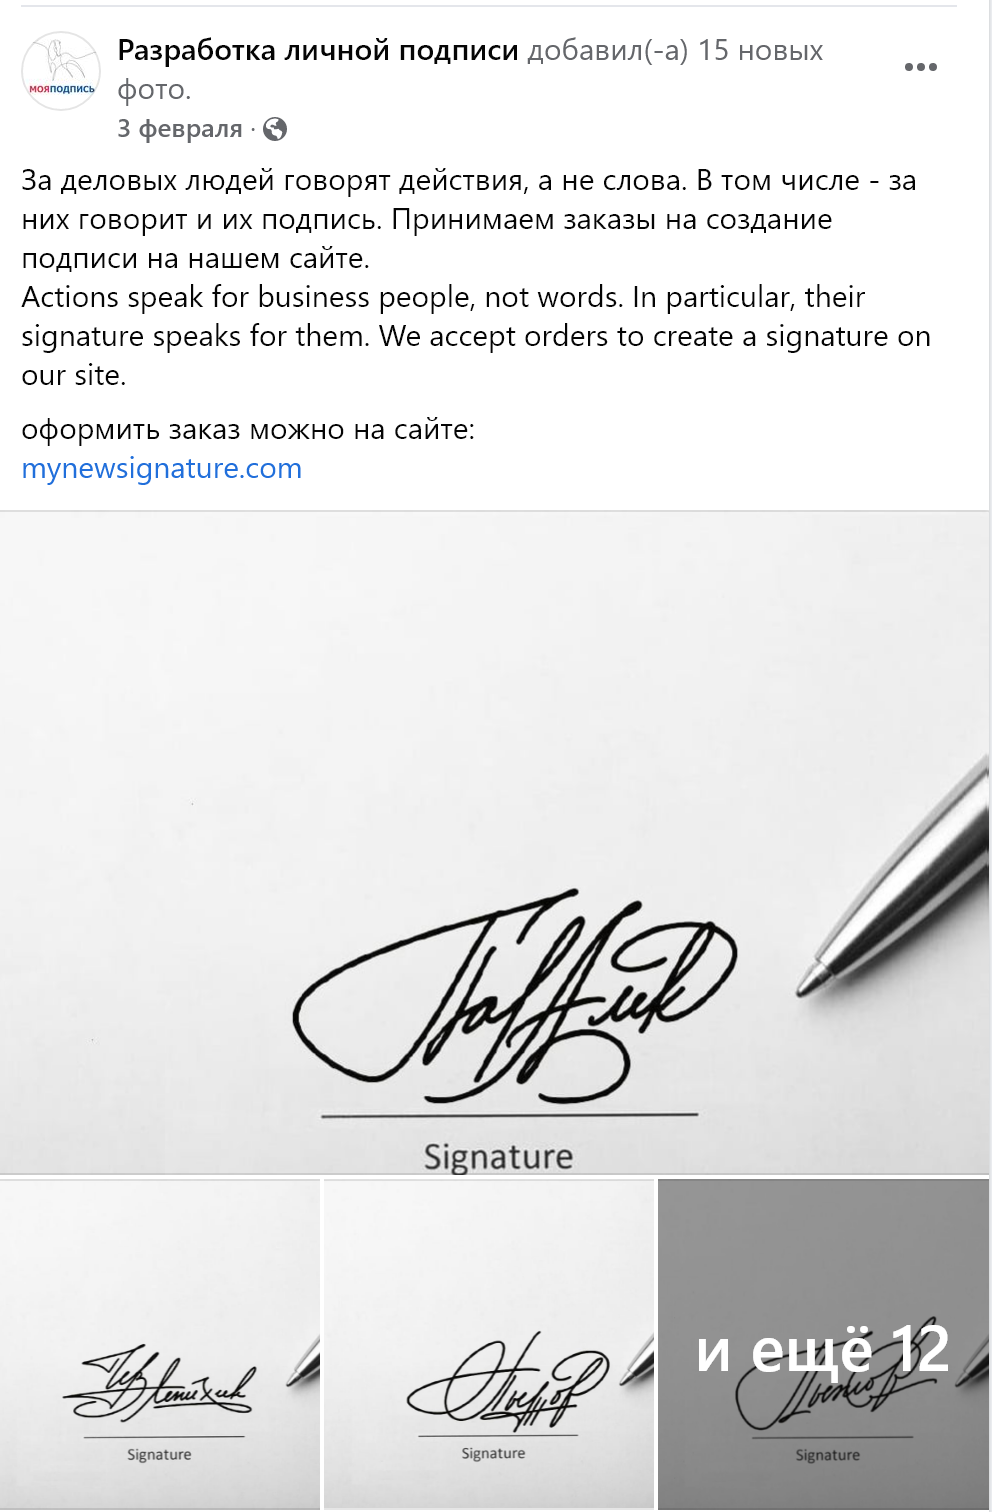 Разработчик подписи. Красивые личные подписи. Разработка автографа. Личная подпись. Подпись фото.